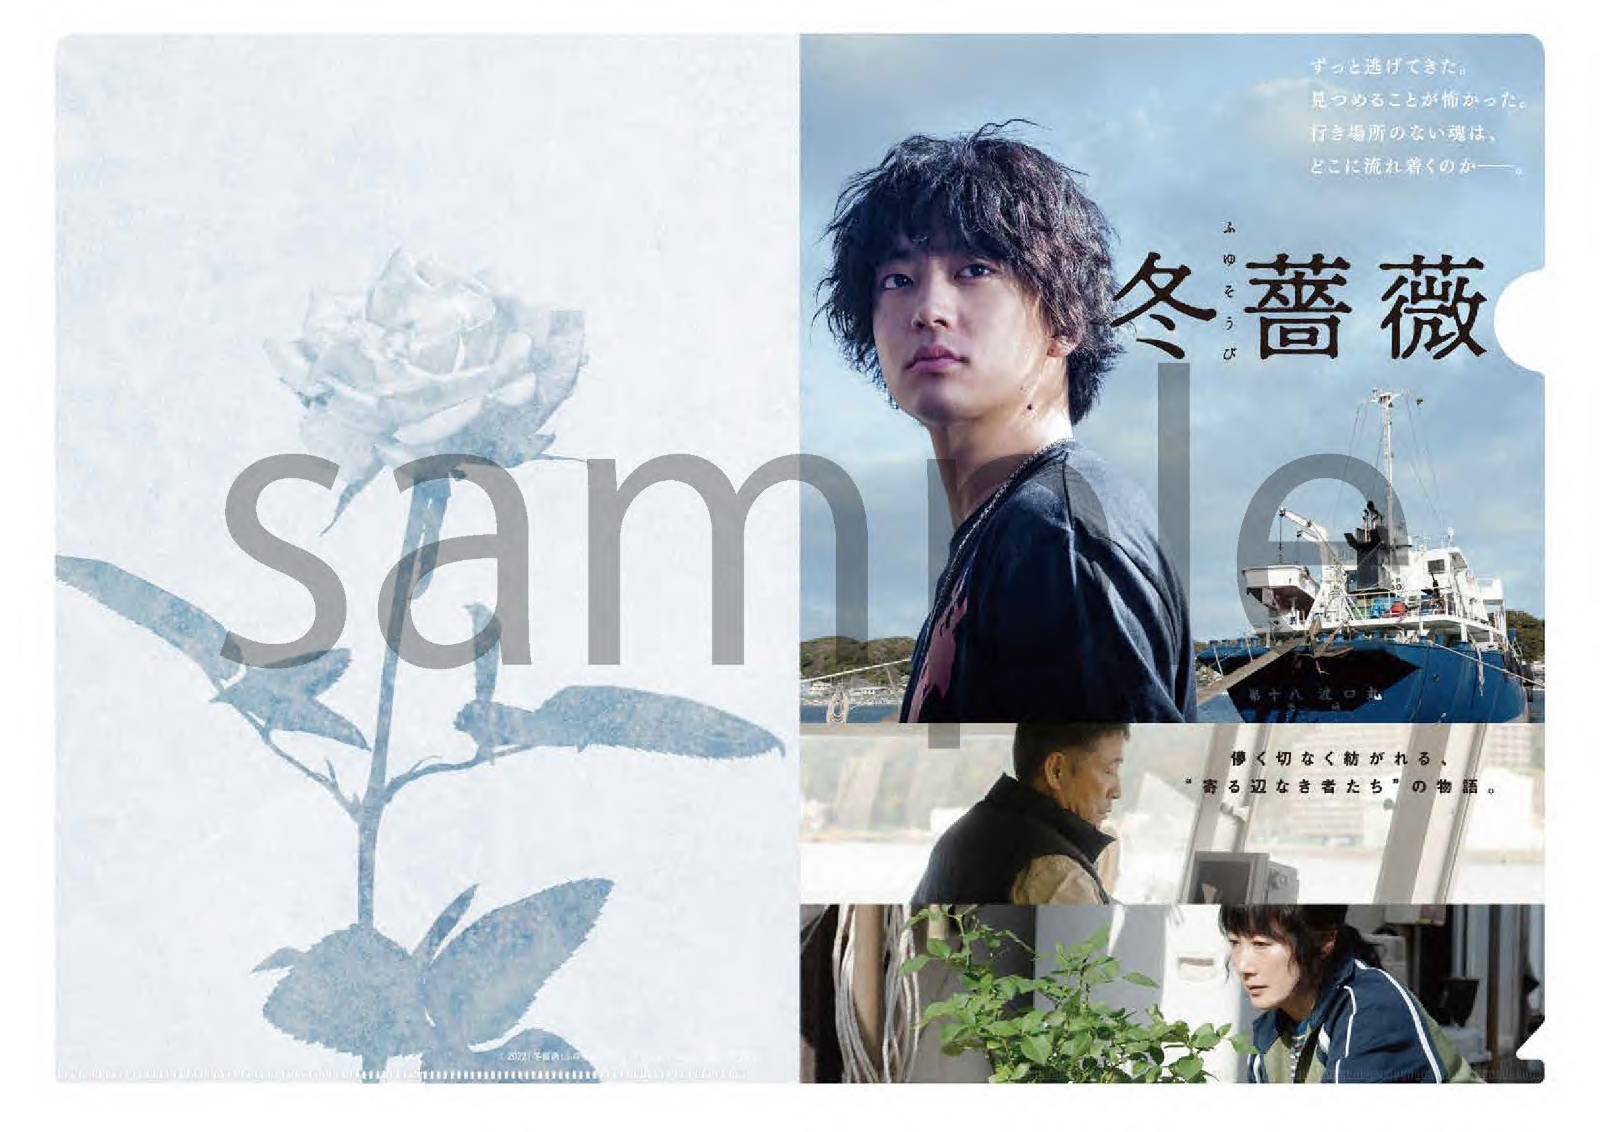 【先着特典】冬薔薇【Blu-ray】(A4クリアファイル)